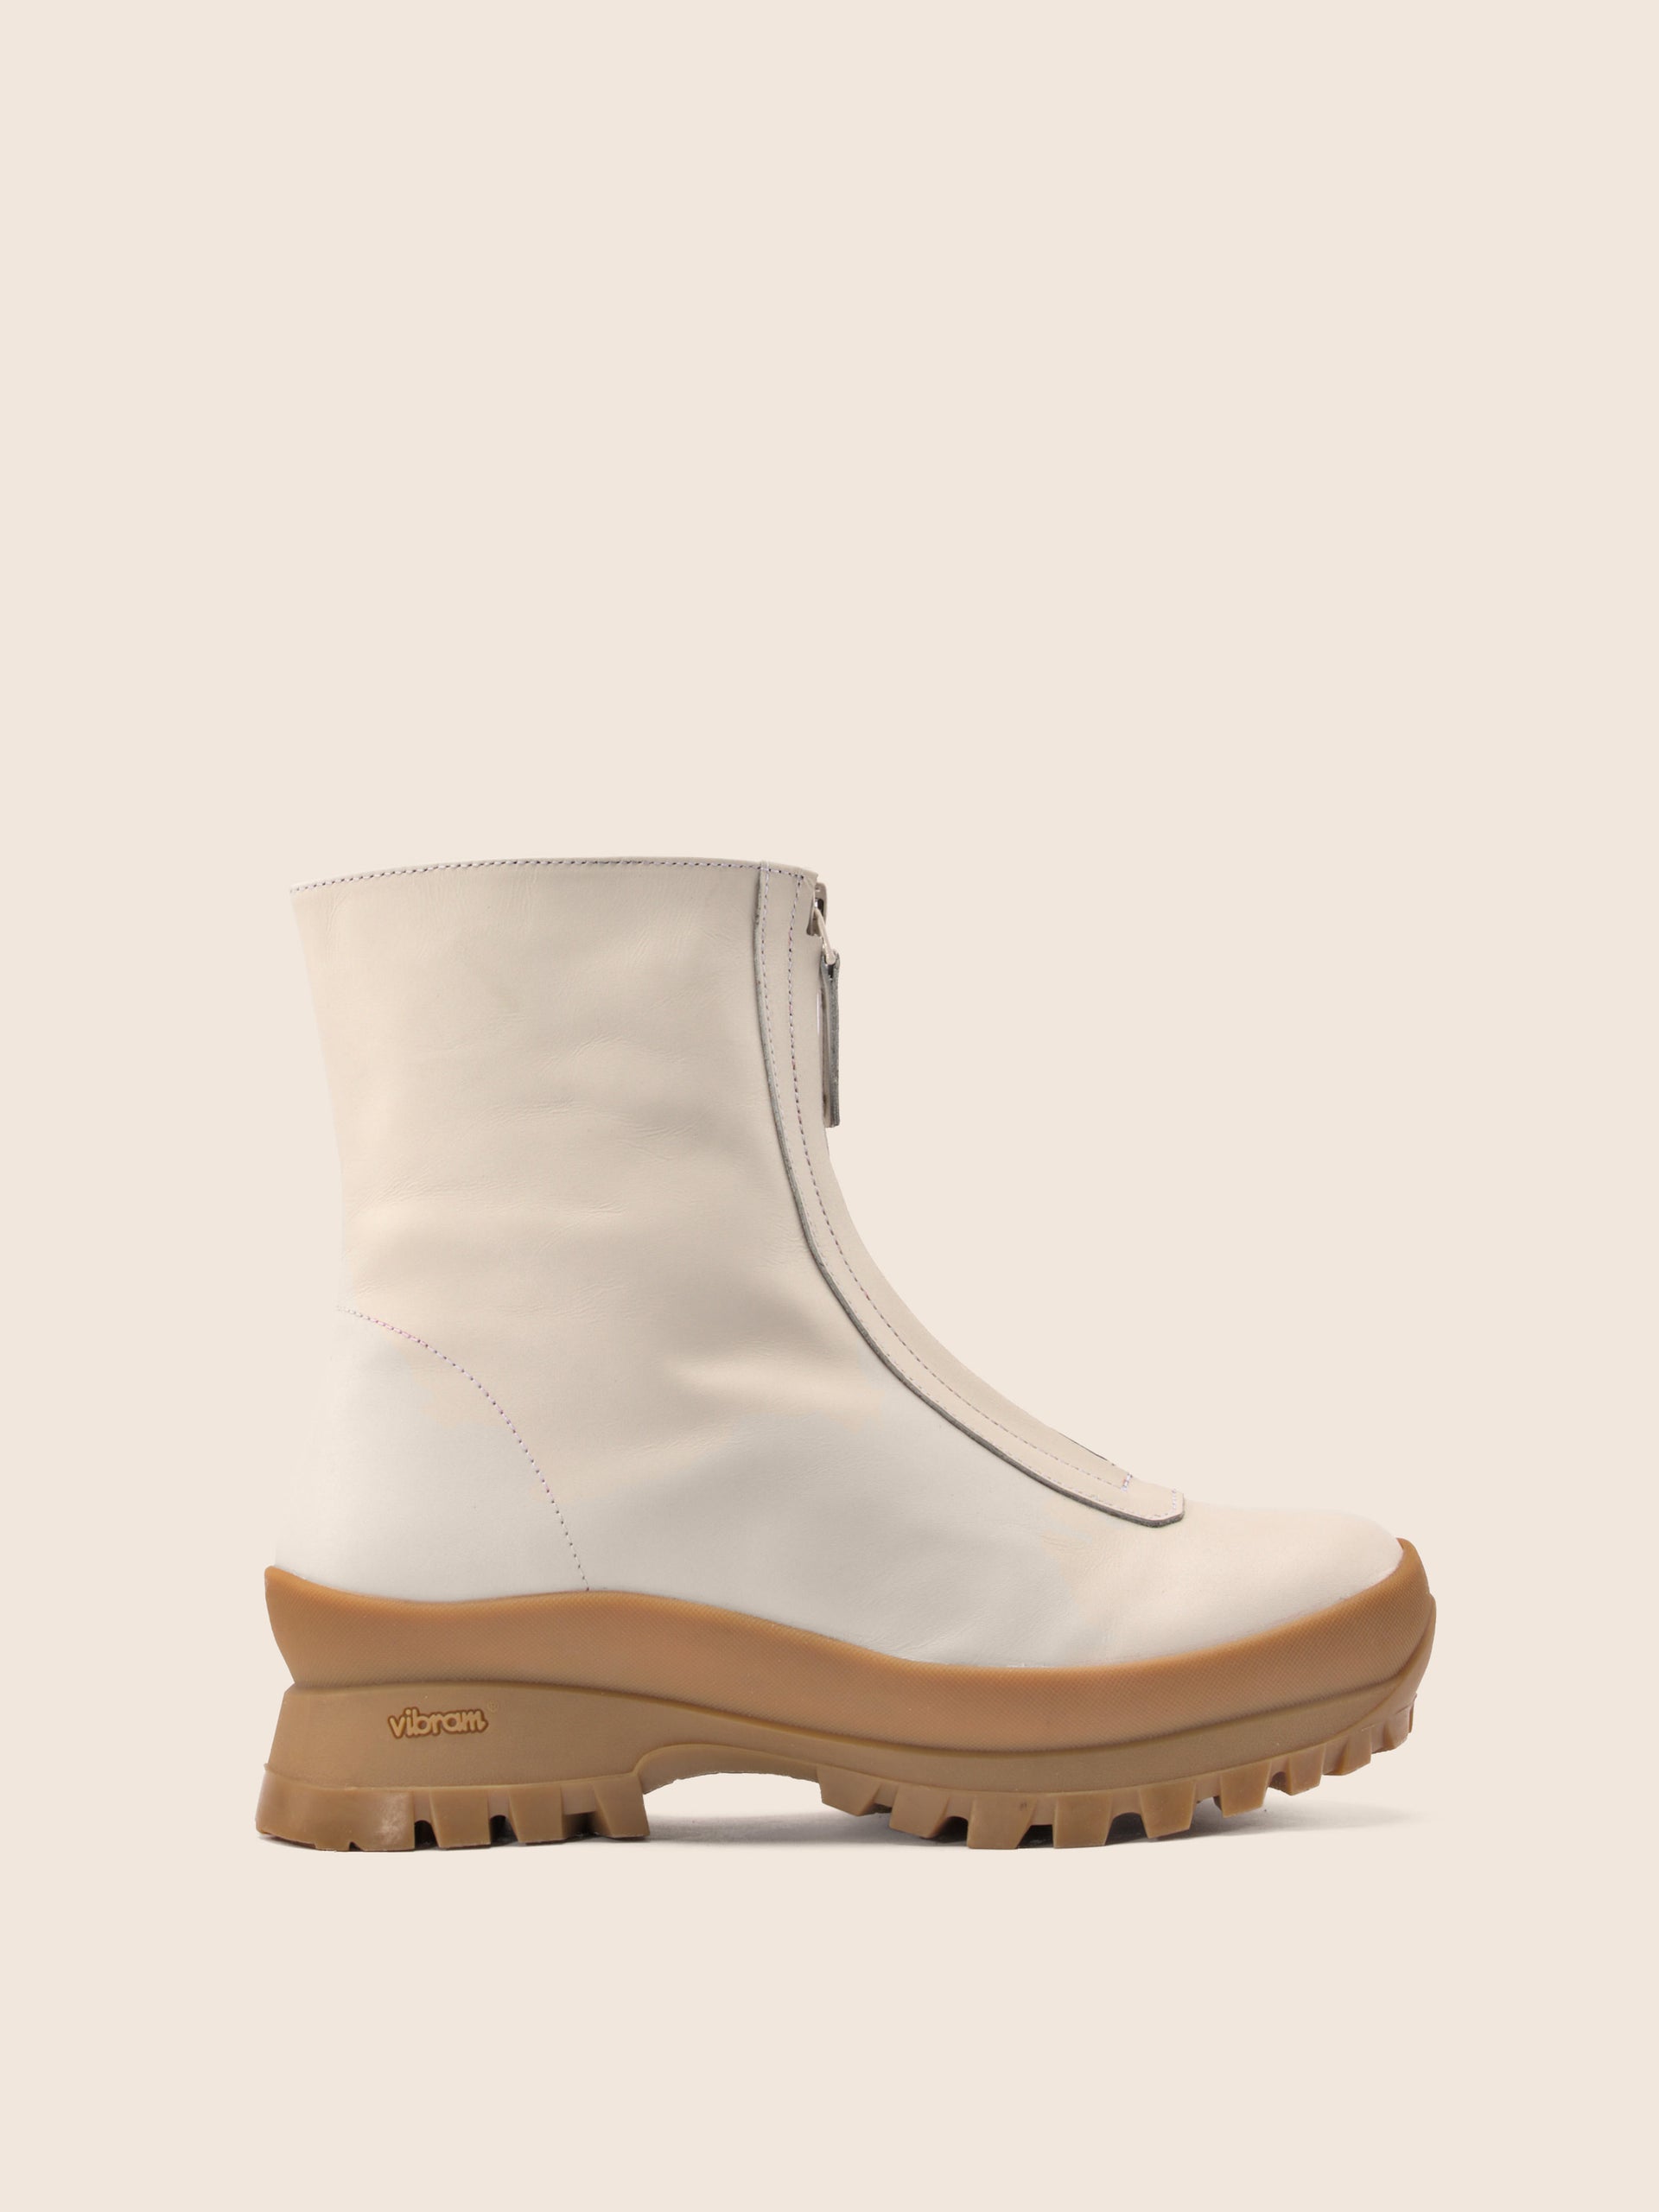 Estrella Cream Winter Boot